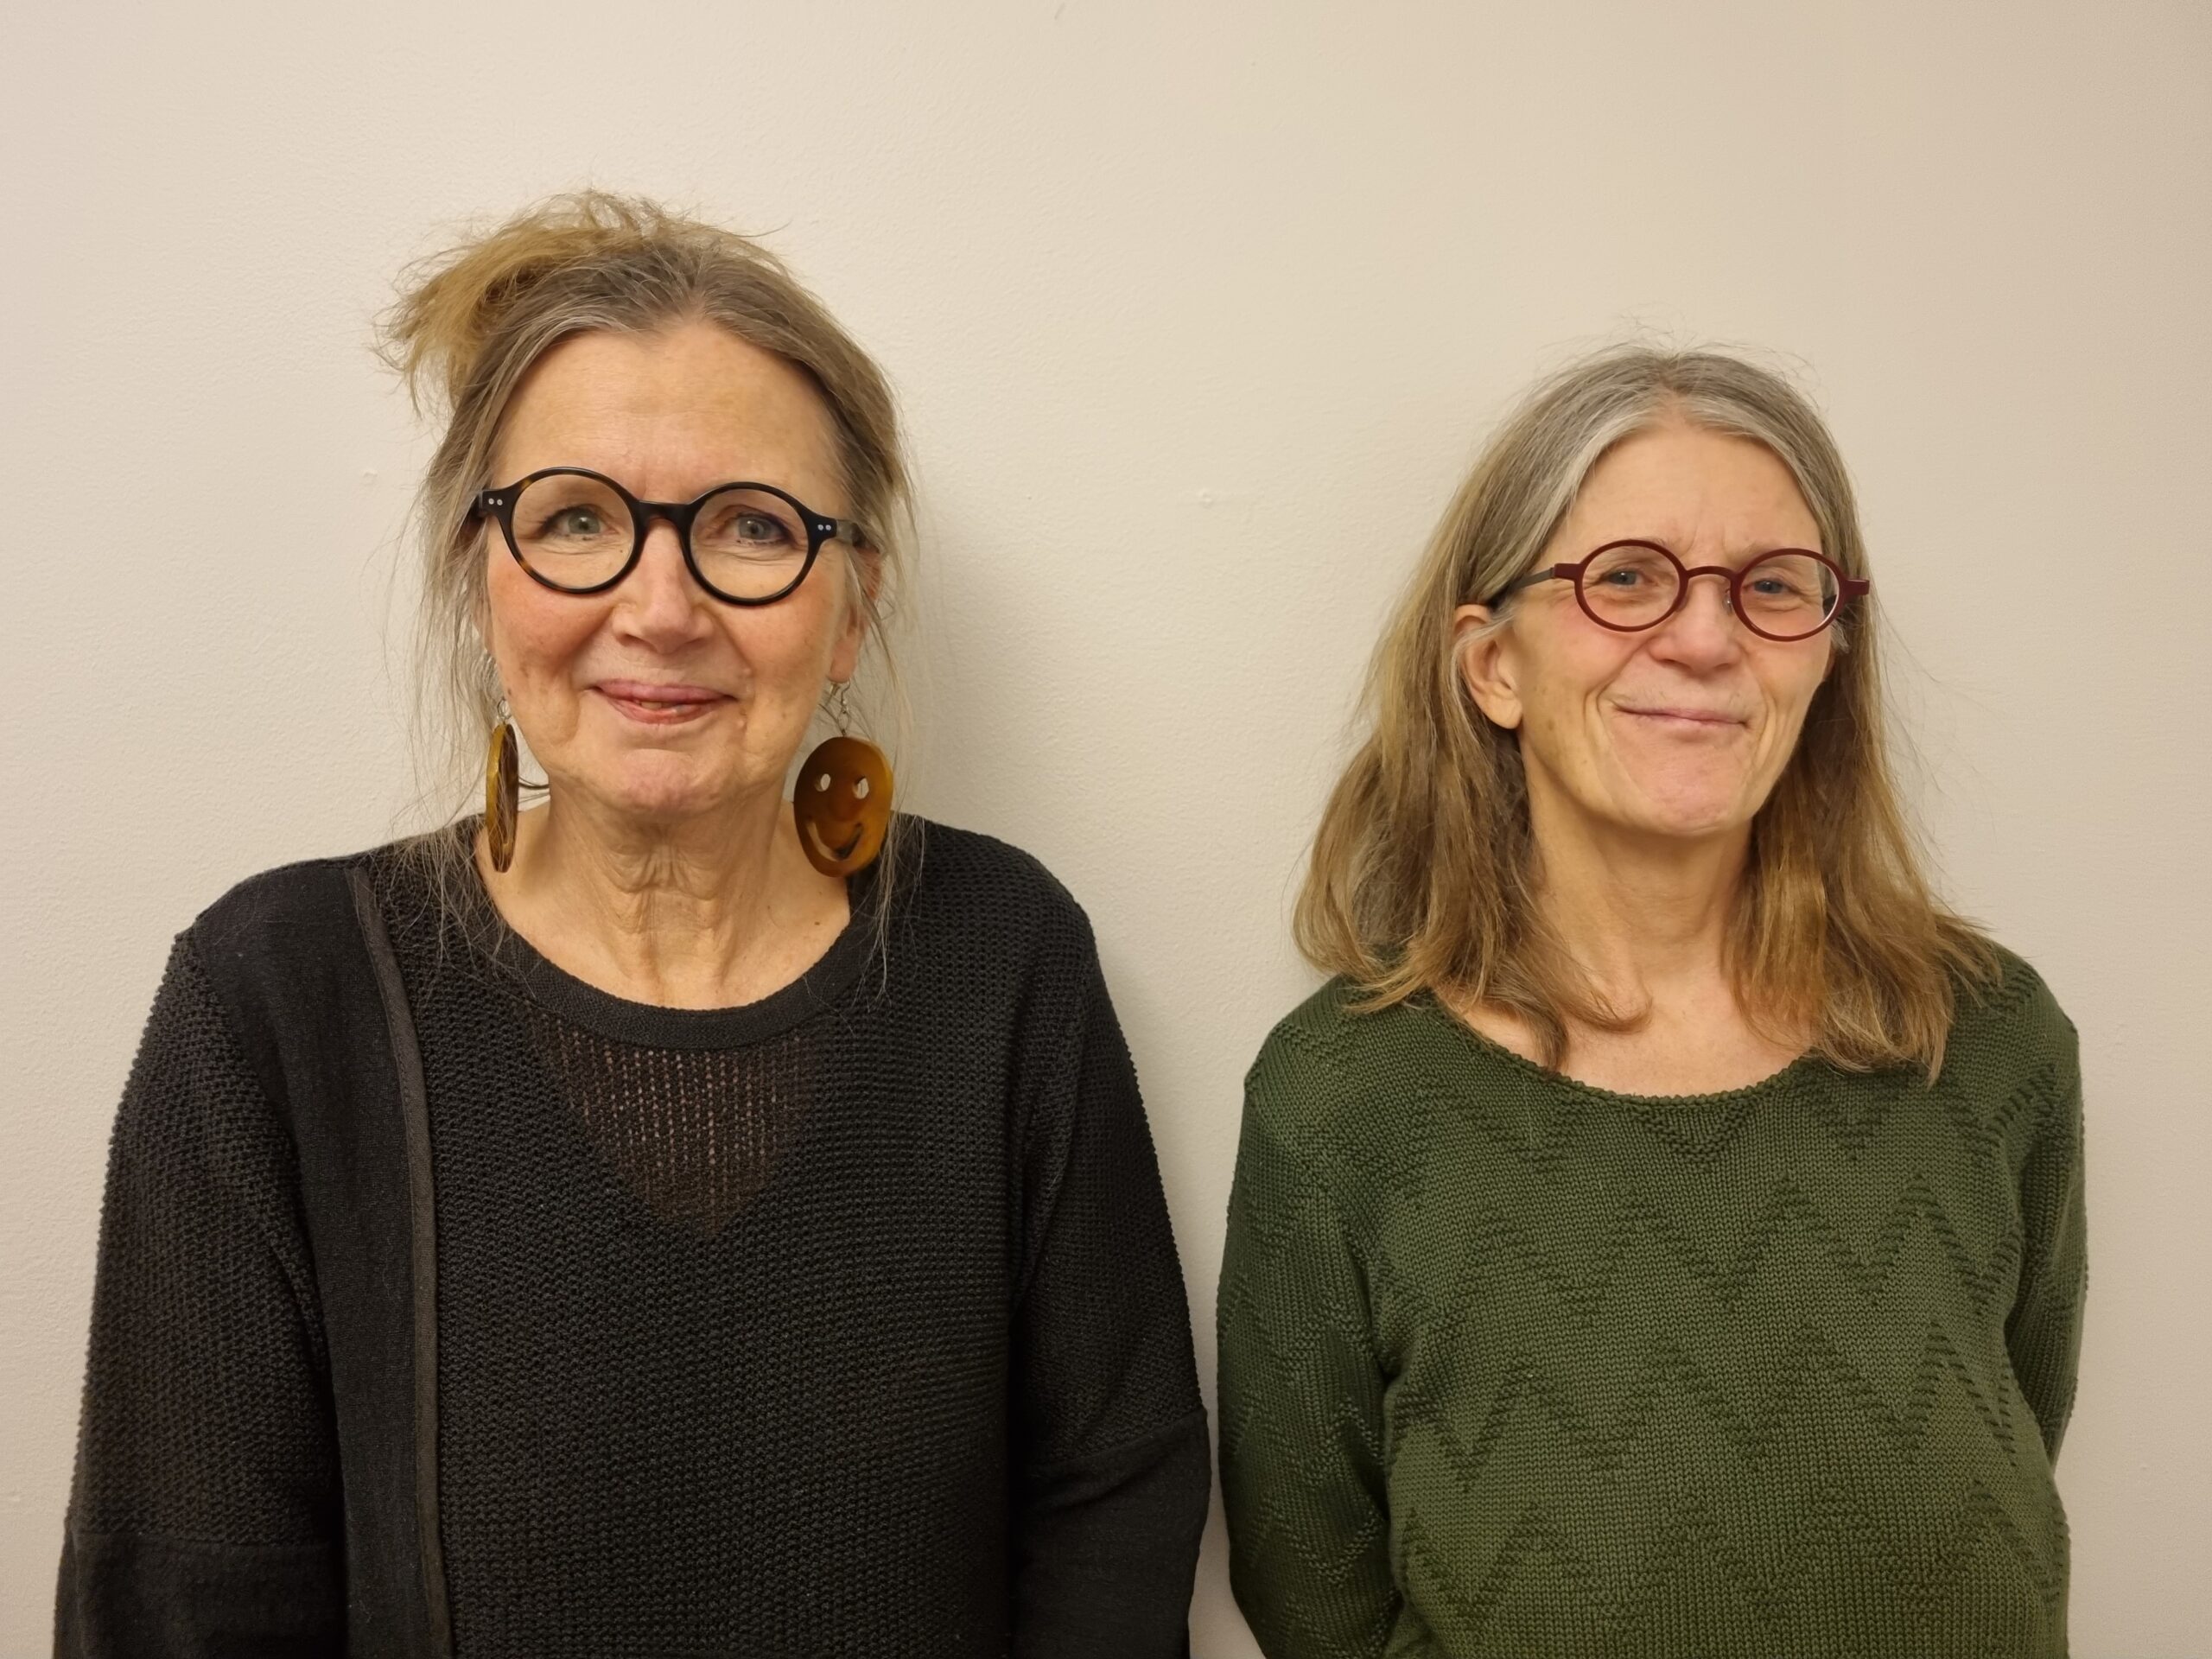 Inger och Ingela har båda glasögon och långt hår. Inger bär en svart tröja och Ingela en grön tröja med rundad hals.